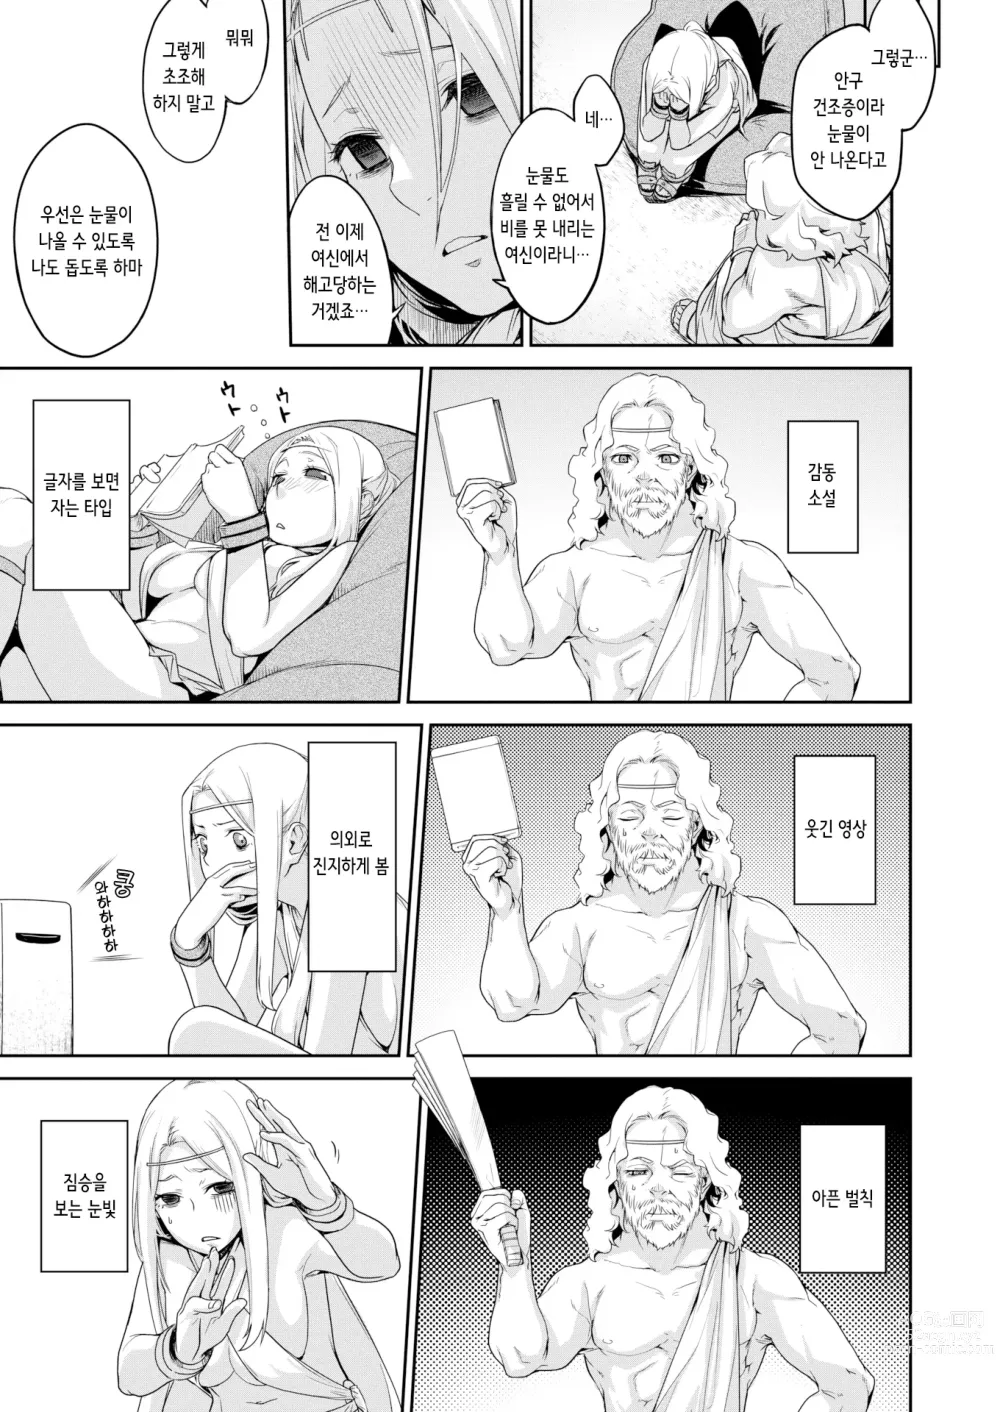 Page 3 of manga 기우제 (decensored)